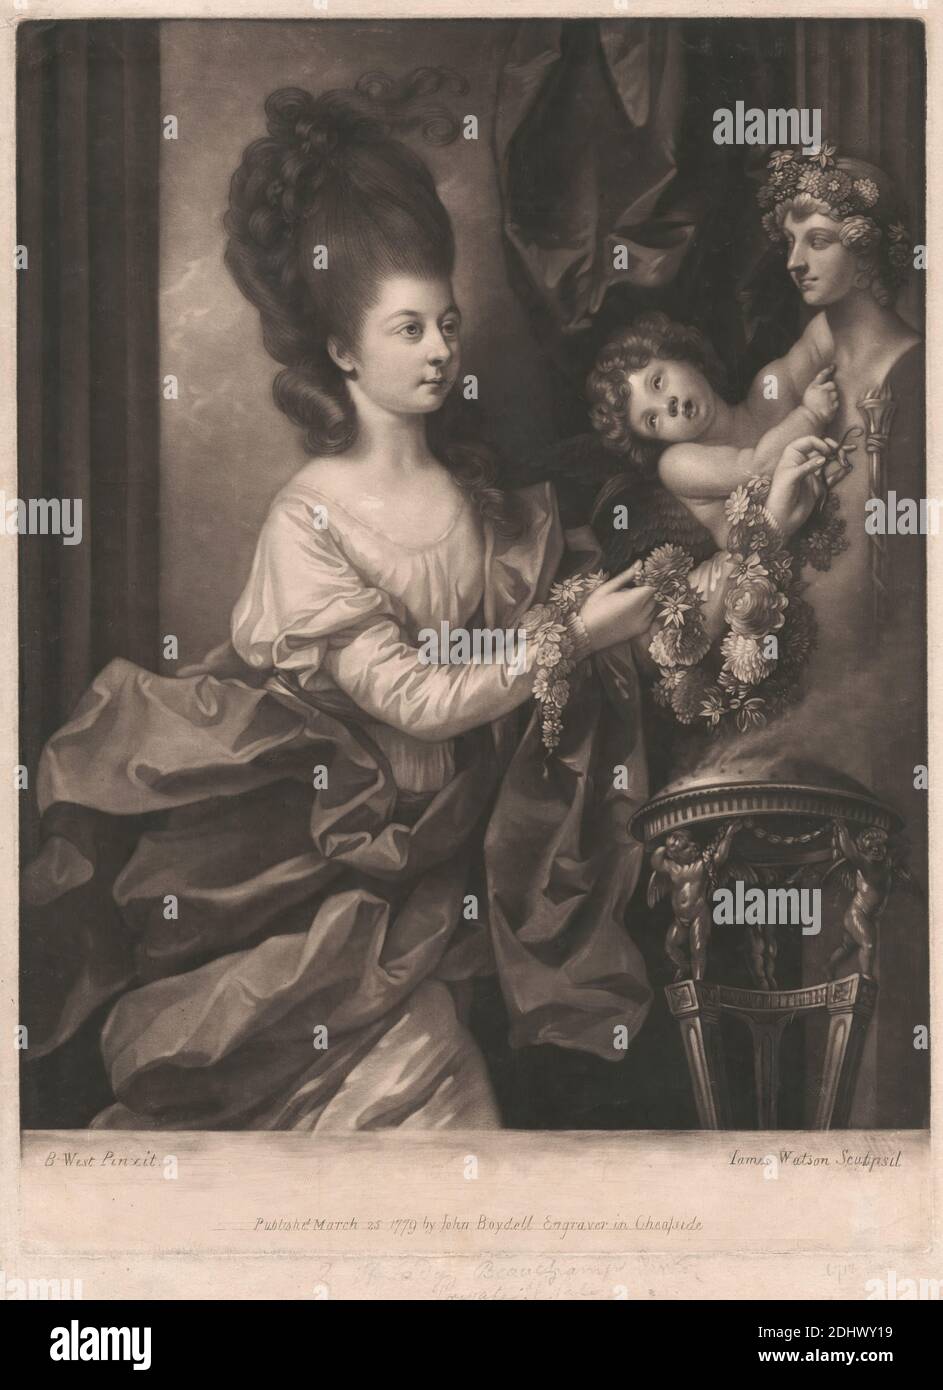 Lady Beauchamp Proctor, Stampa realizzata da James Watson, 1740–1790, inglese, After Benjamin West, 1738–1820, americano, attivo in Gran Bretagna (dal 1763), pubblicato da John Boydell, 1720–1804, britannico, 1779, Mezzotint su carta leggermente spessa, moderatamente testurizzata, crema, foglio: 15 7/8 × 11 9/16 pollici (40.3 × 29.4 cm), piatto: 14 15/16 × 11 1/16 pollici (37.9 × 28.1 cm) e immagine: 13 1/2 × 11 pollici (34.3 × 27.9 cm Foto Stock